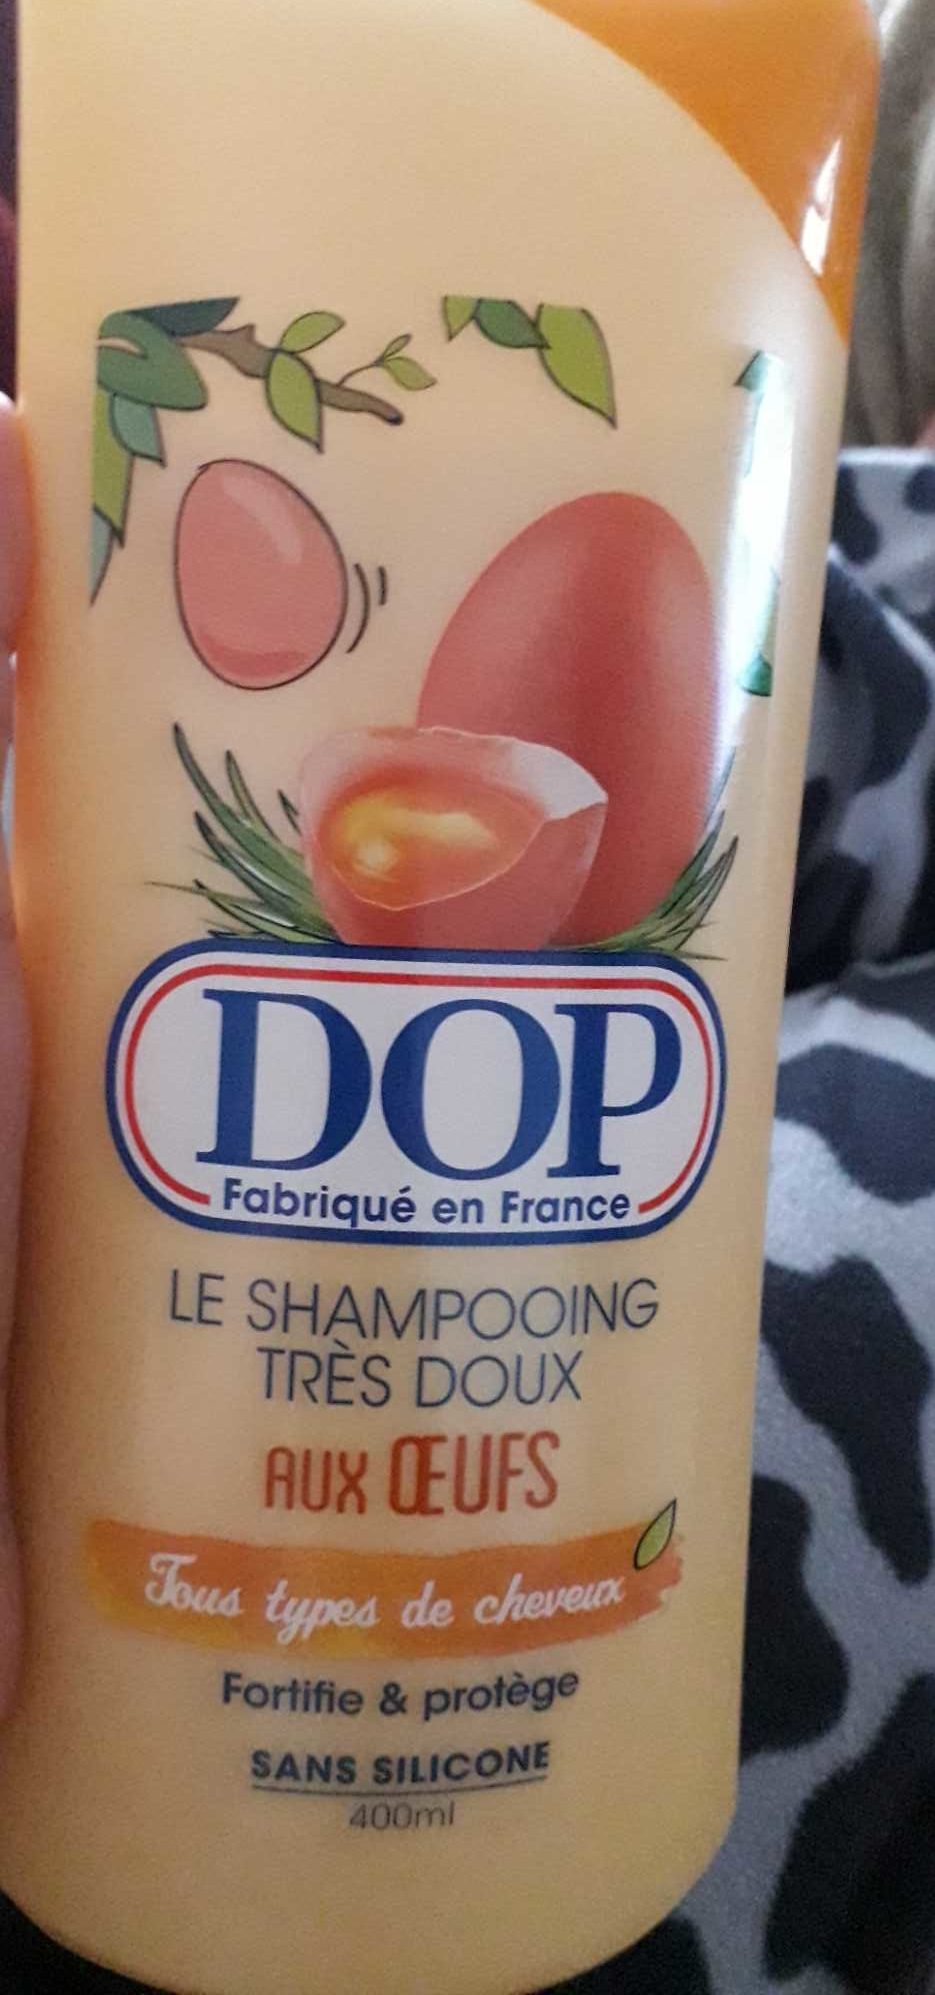 Le shampooing très doux aux oeufs - Product - fr